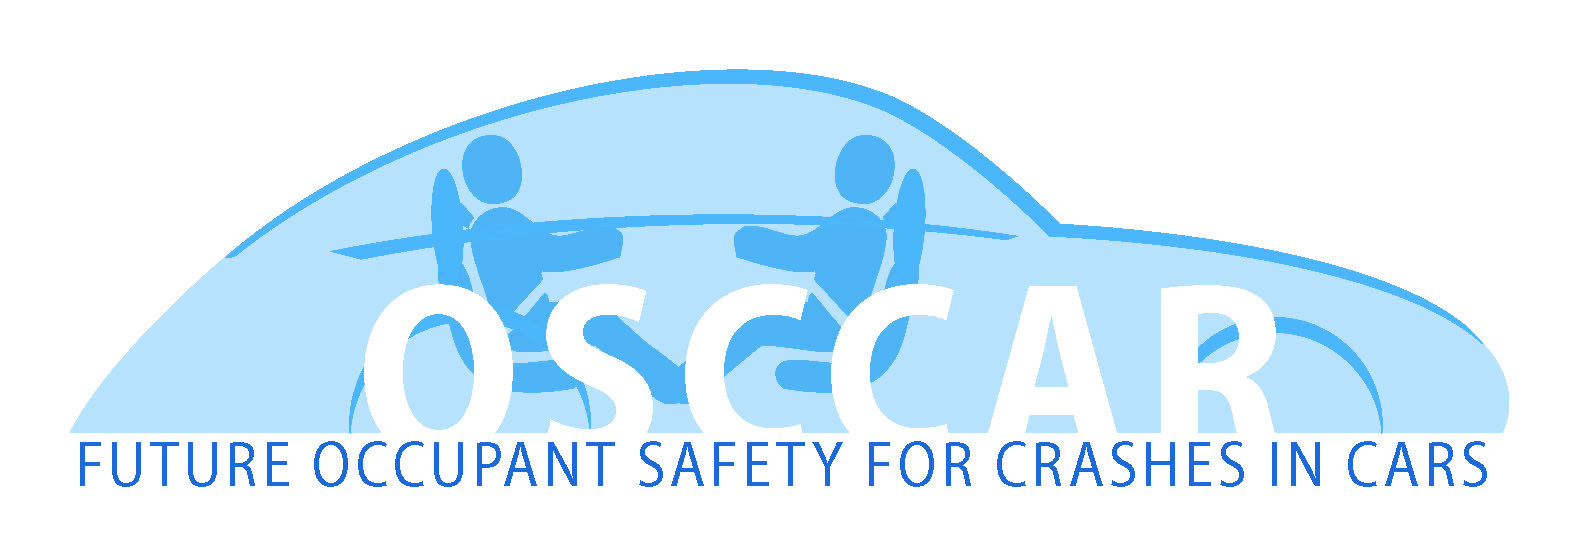 OSCCAR-Logo